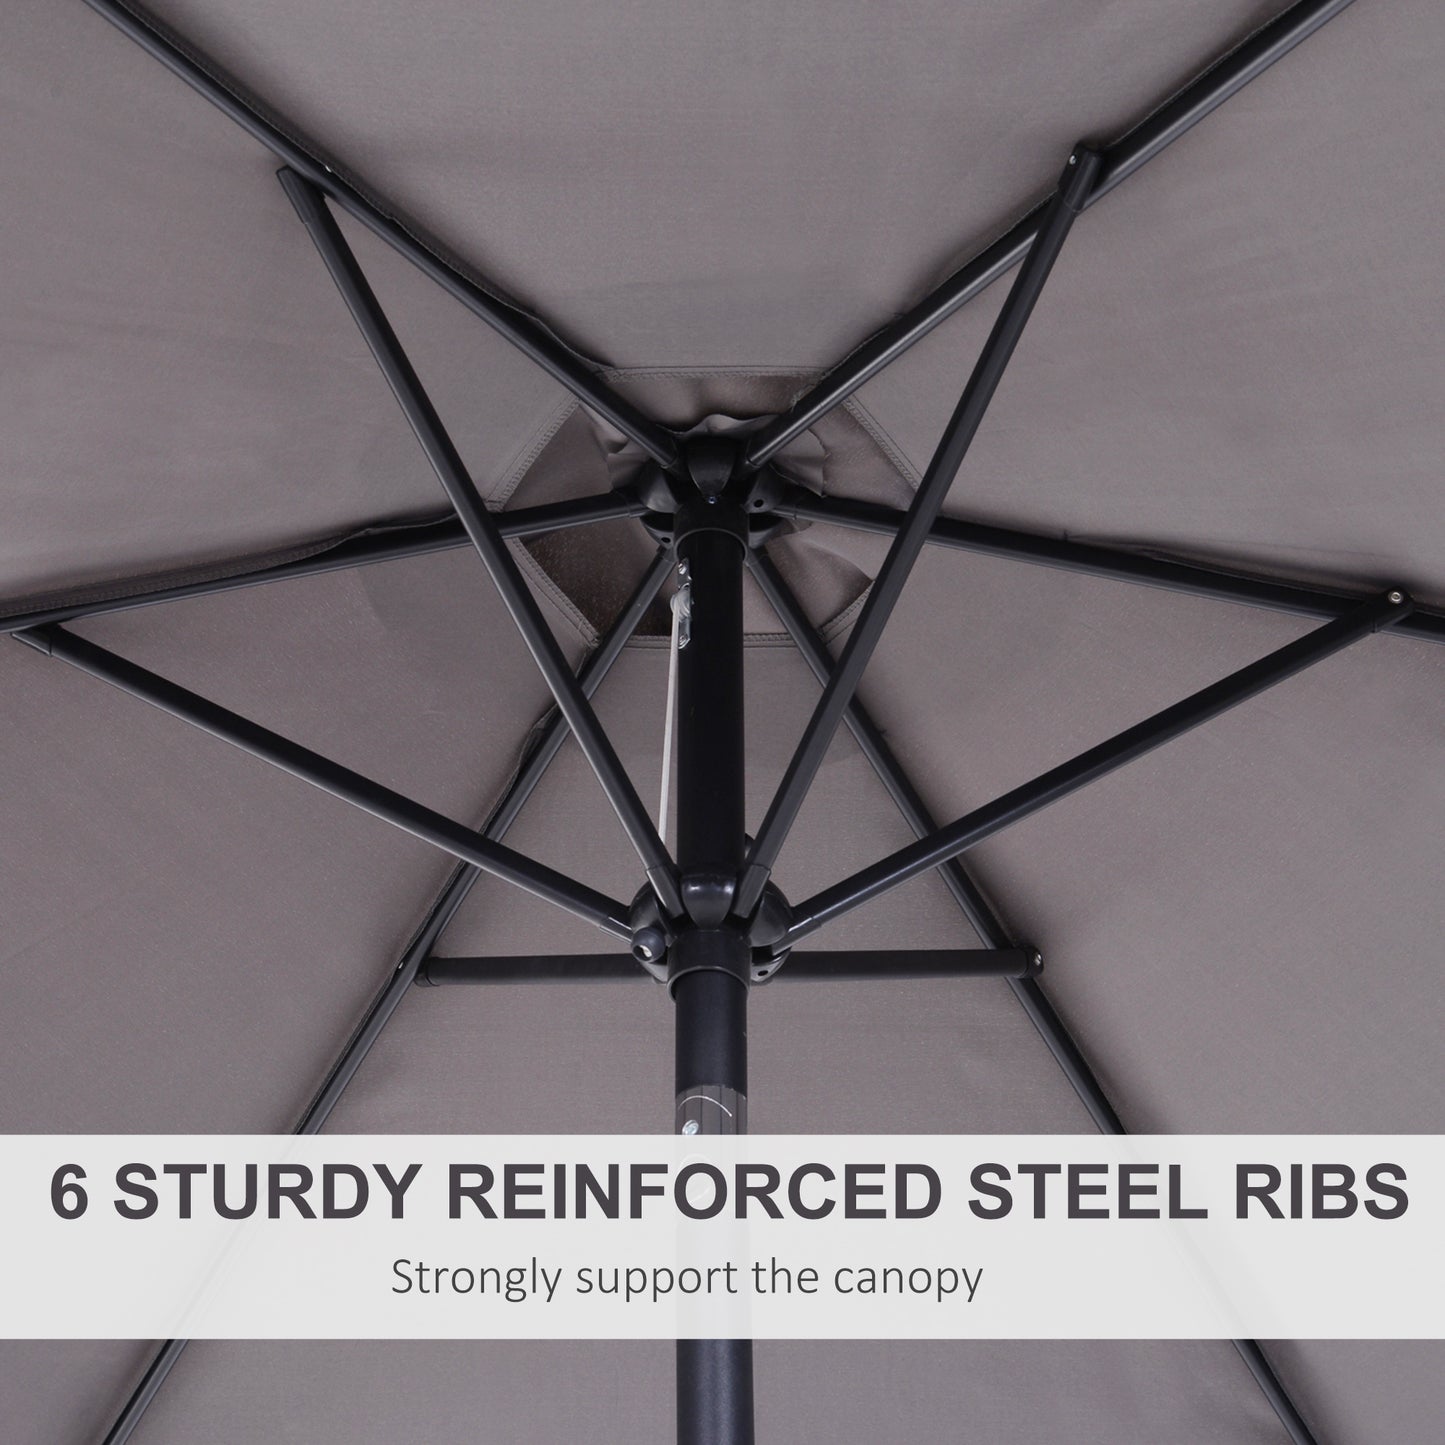 Outsunny 2.7 m Patio Umbrella, Aluminum Frame-Grey